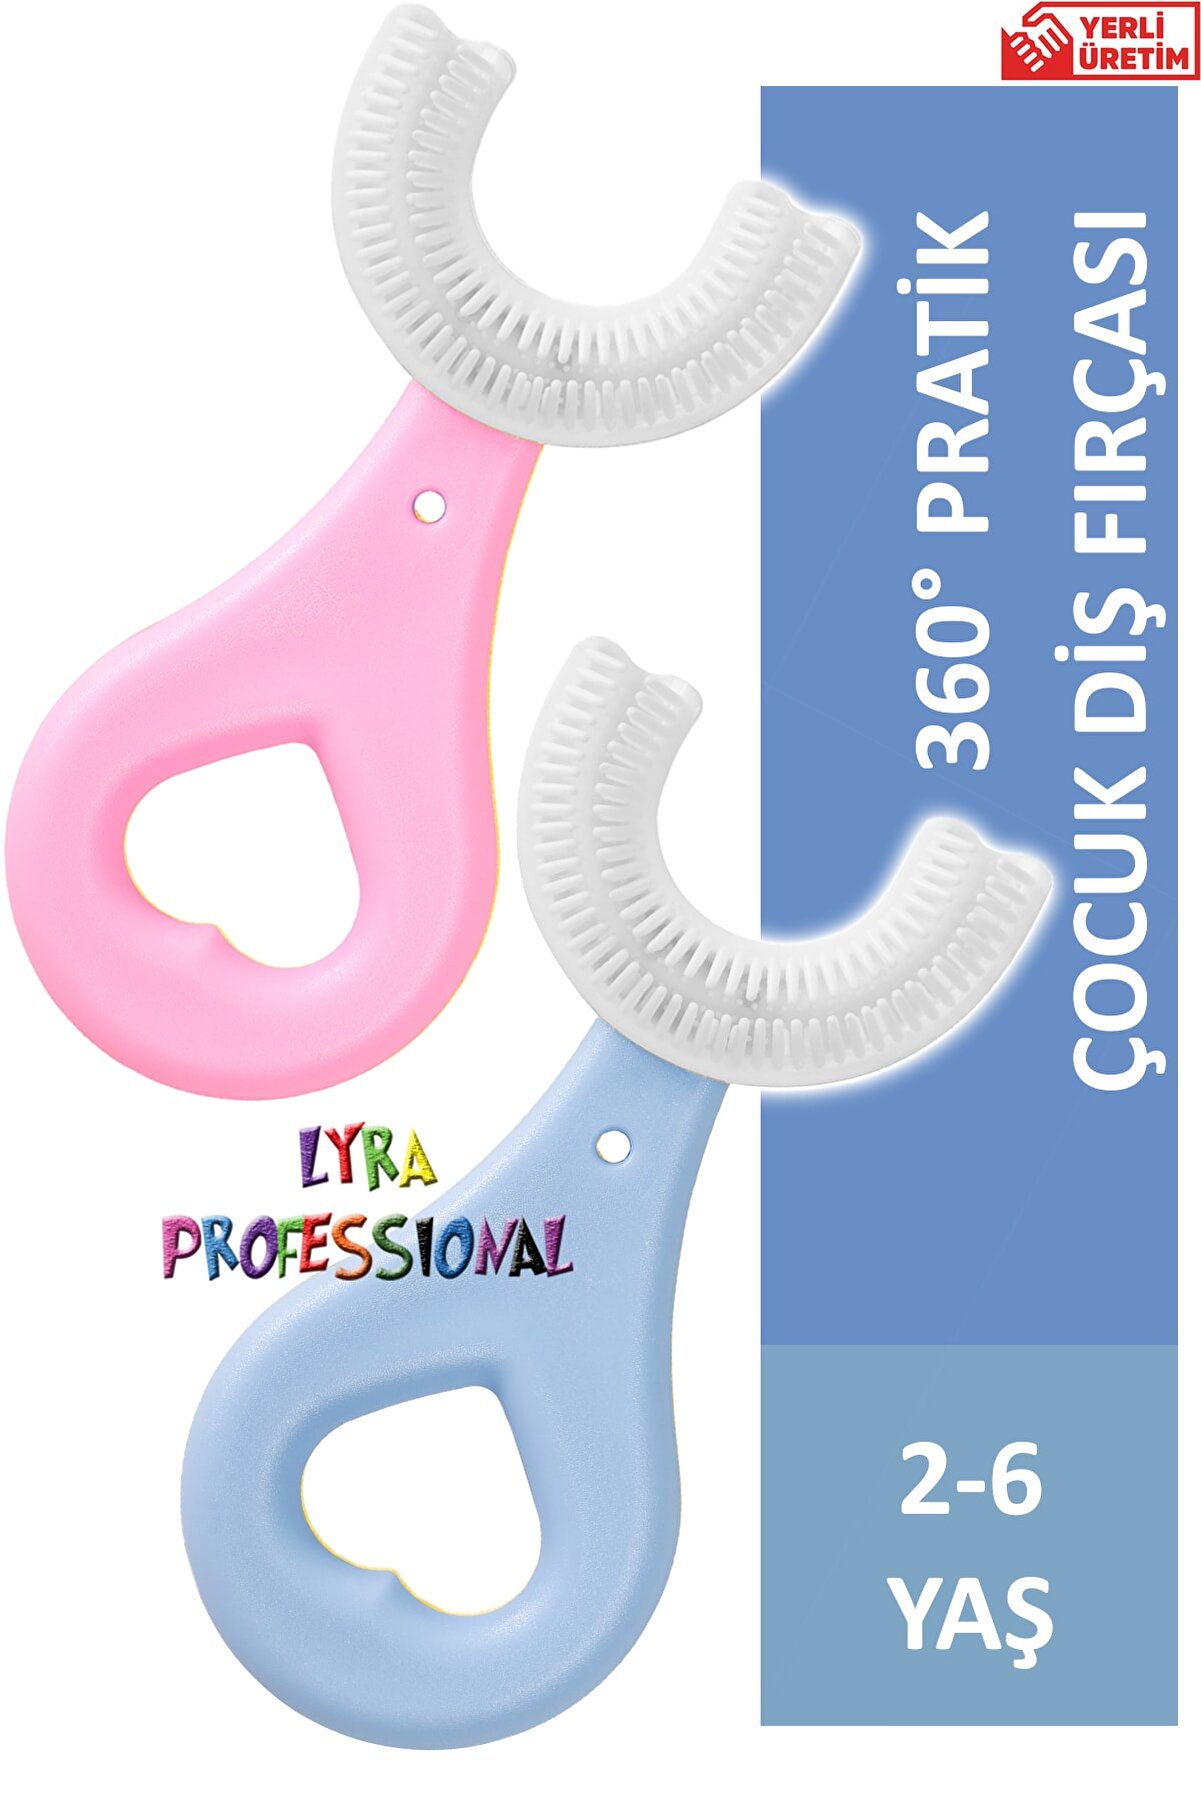 Lyra Professional U Şeklinde Ikili Set Pratik Çocuk Diş Fırçası 2-6 Yaş Pembe Mavi